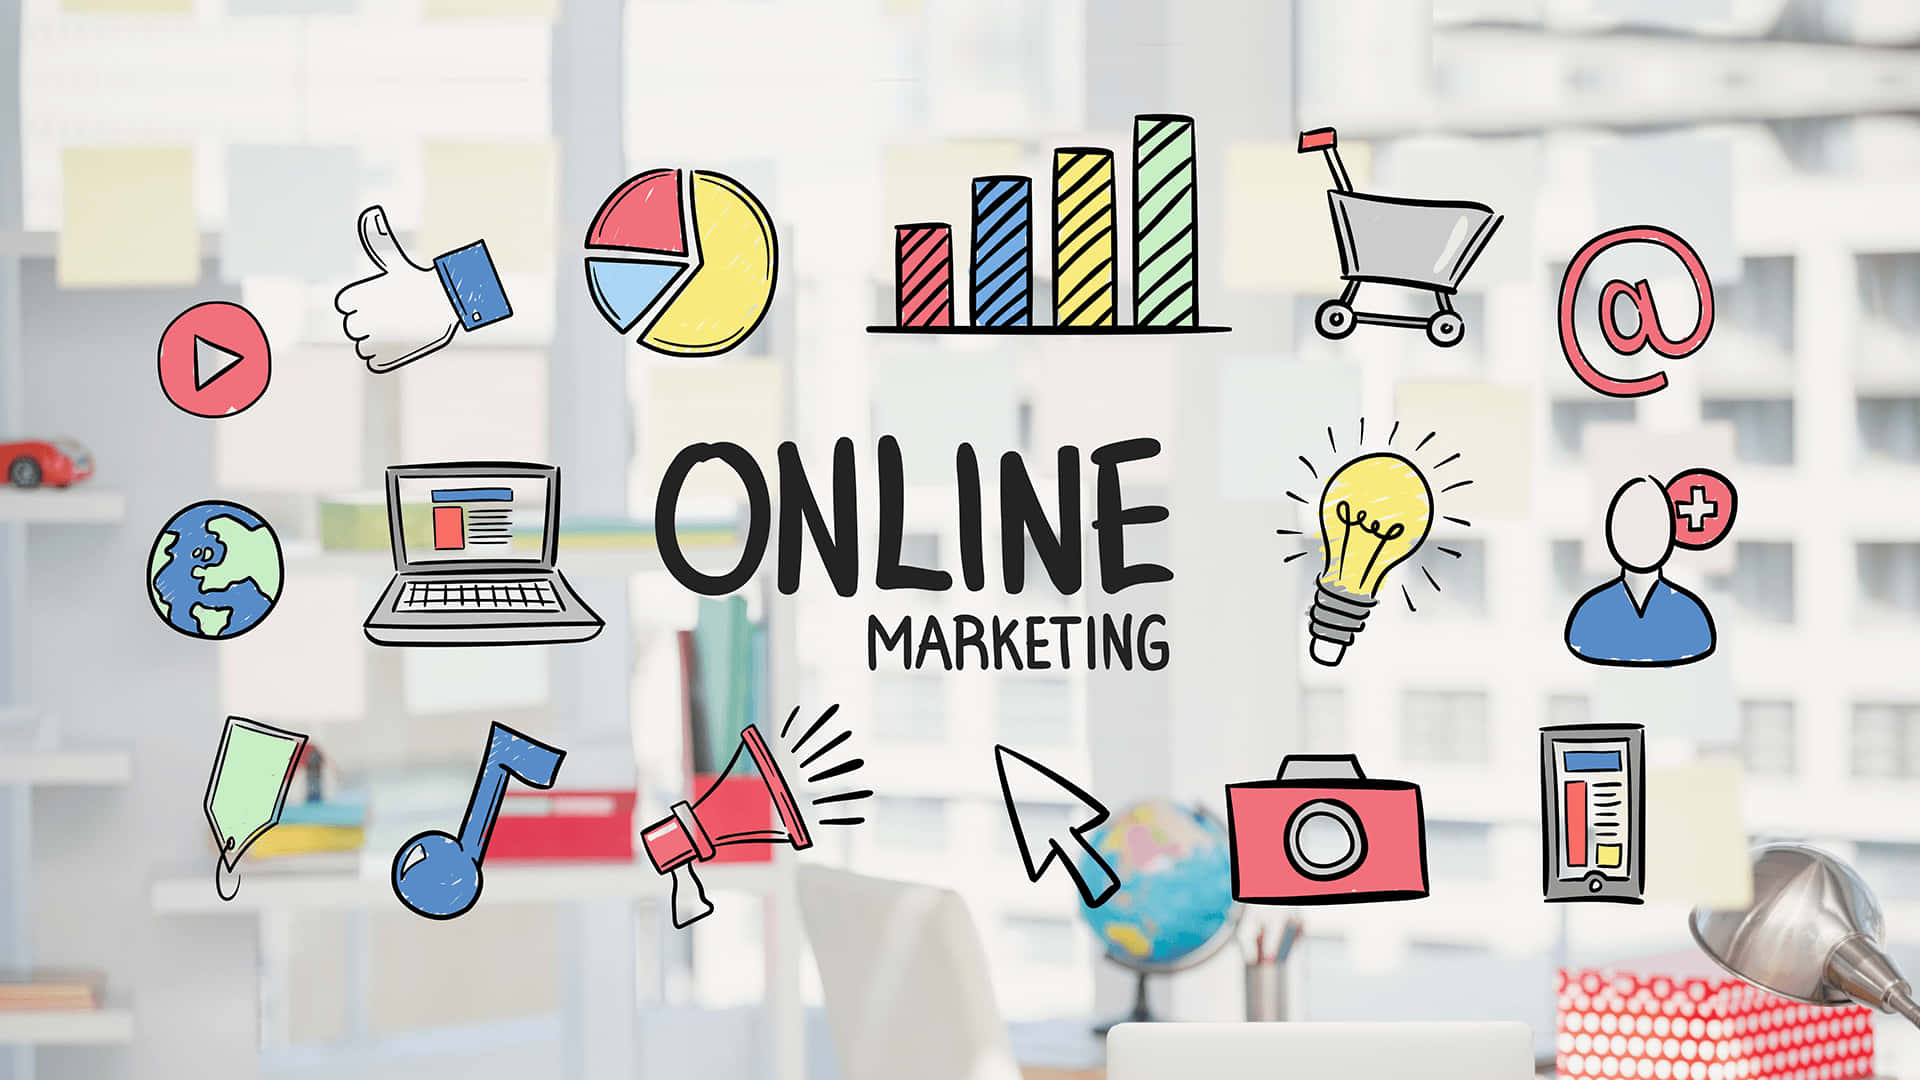 Online Marketing Doodle Background